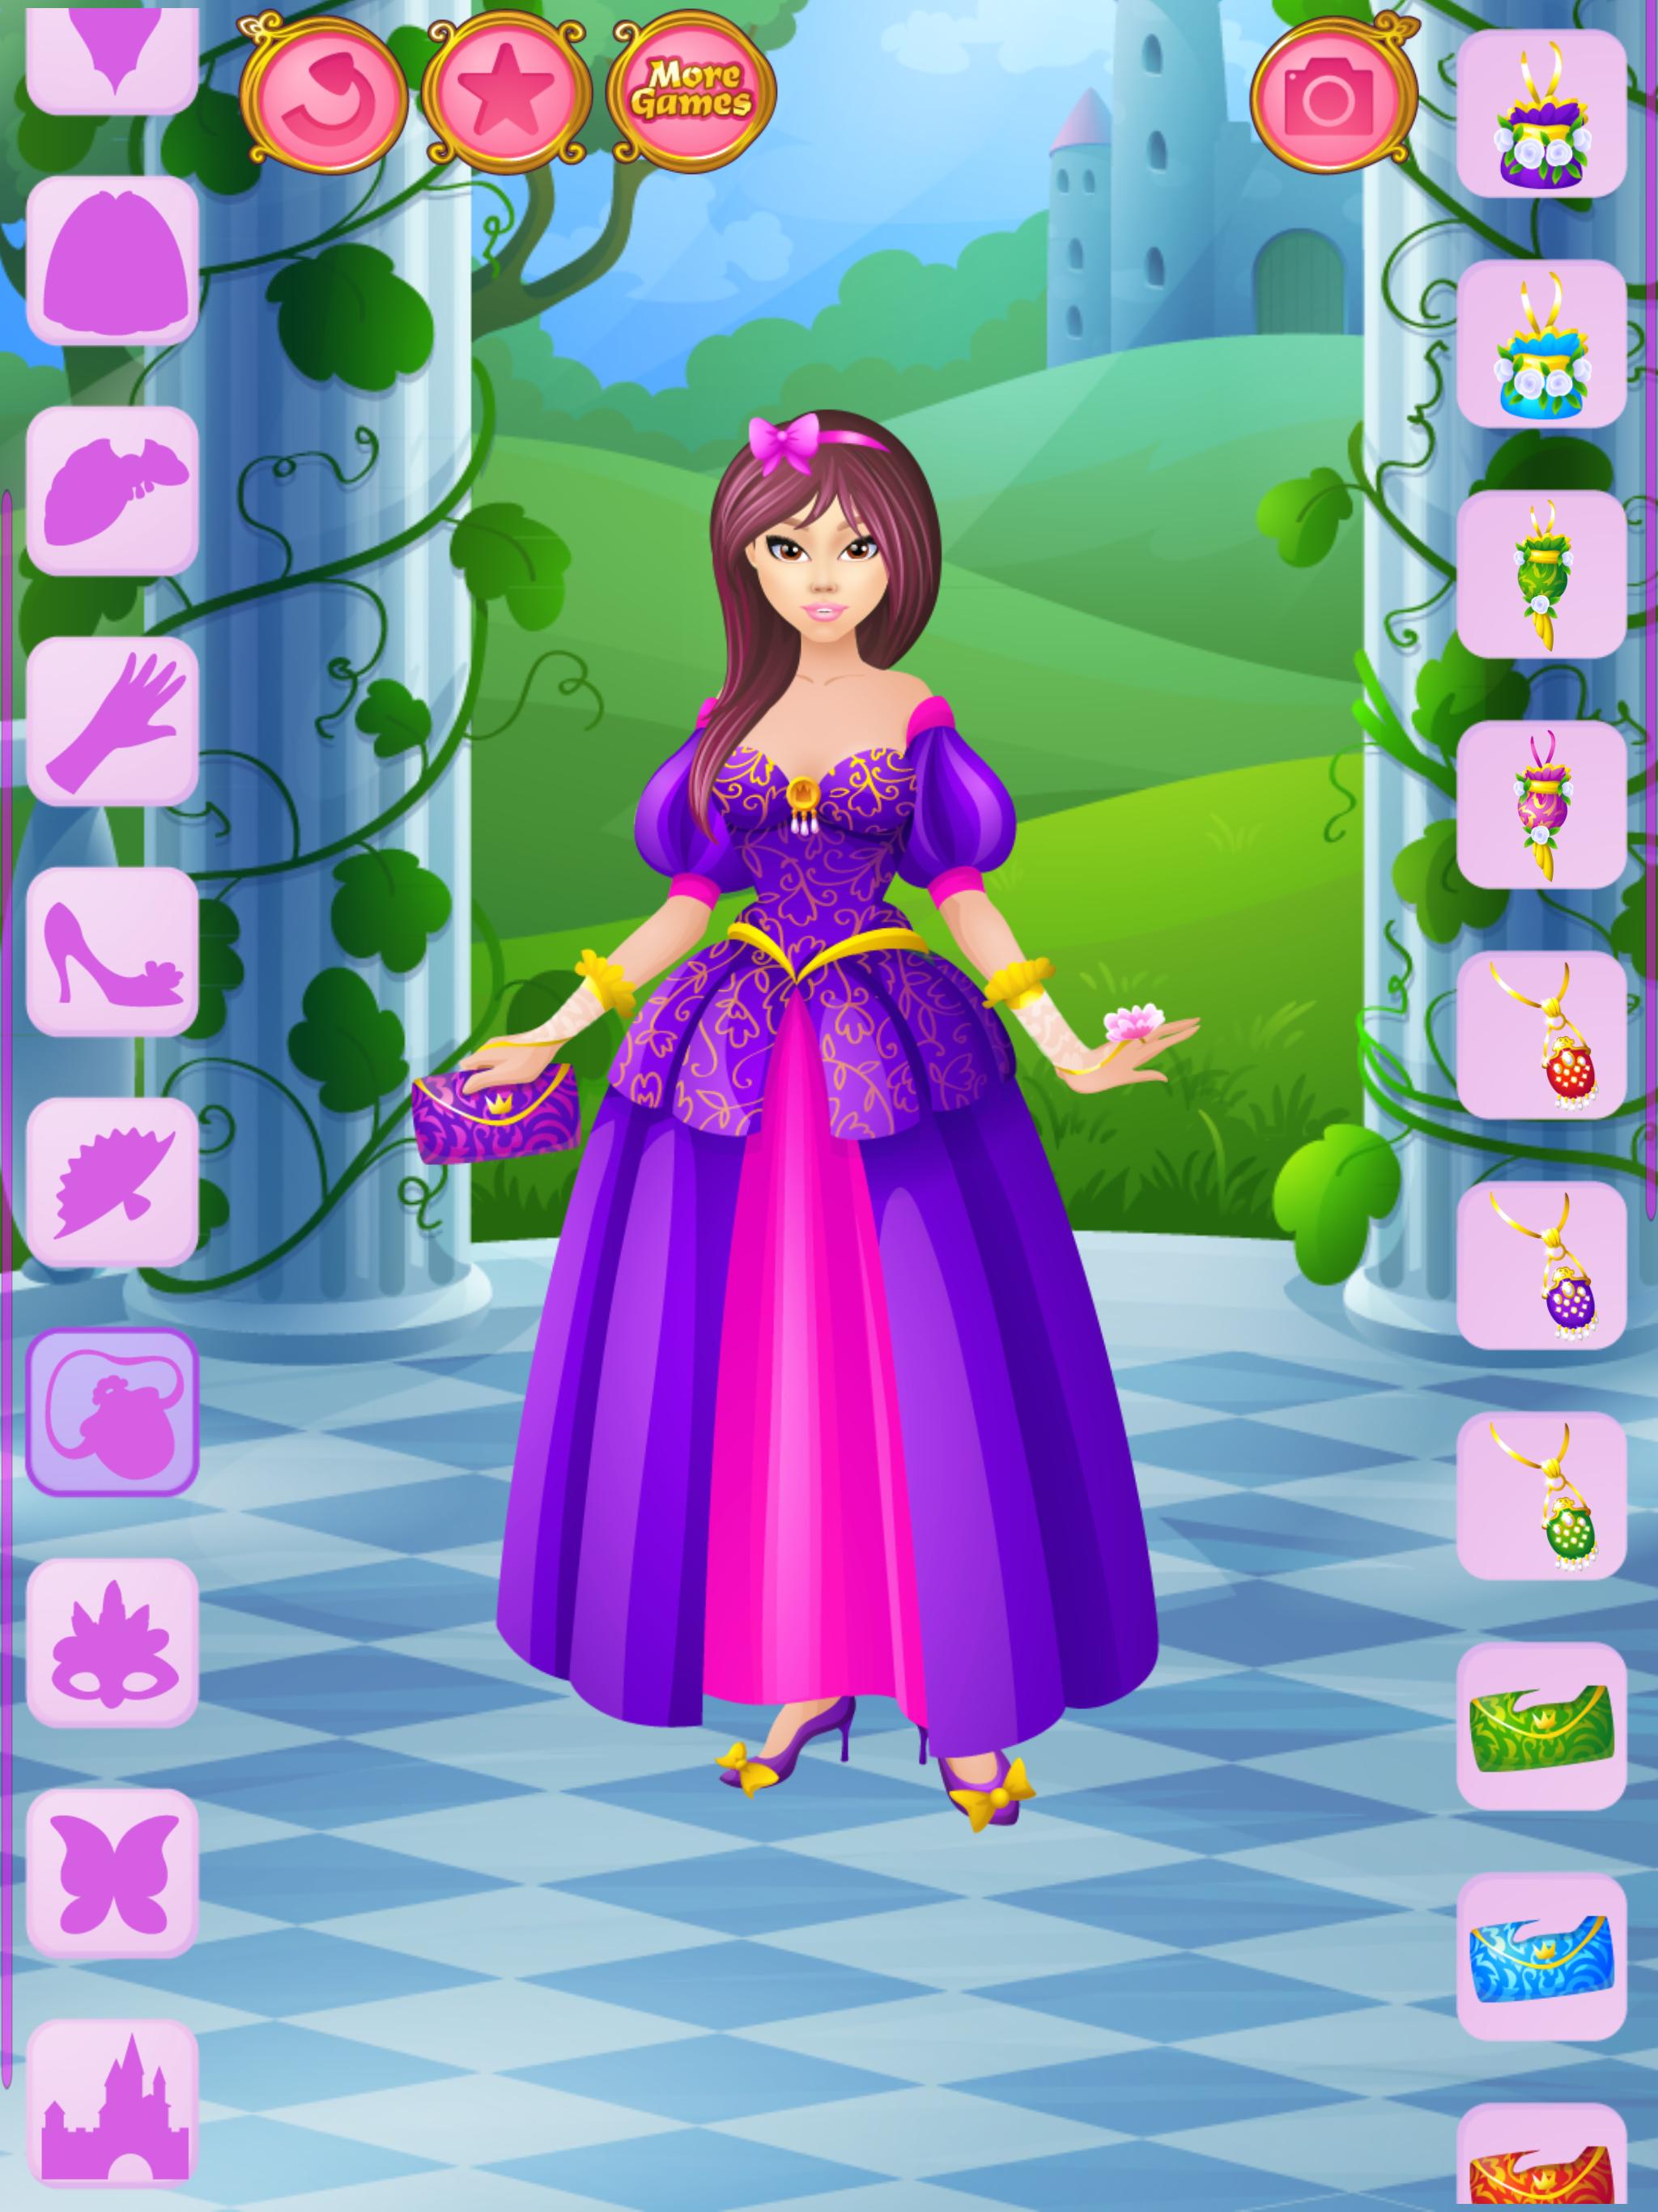 Dress up - Games for Girls 1.3.2 Screenshot 13